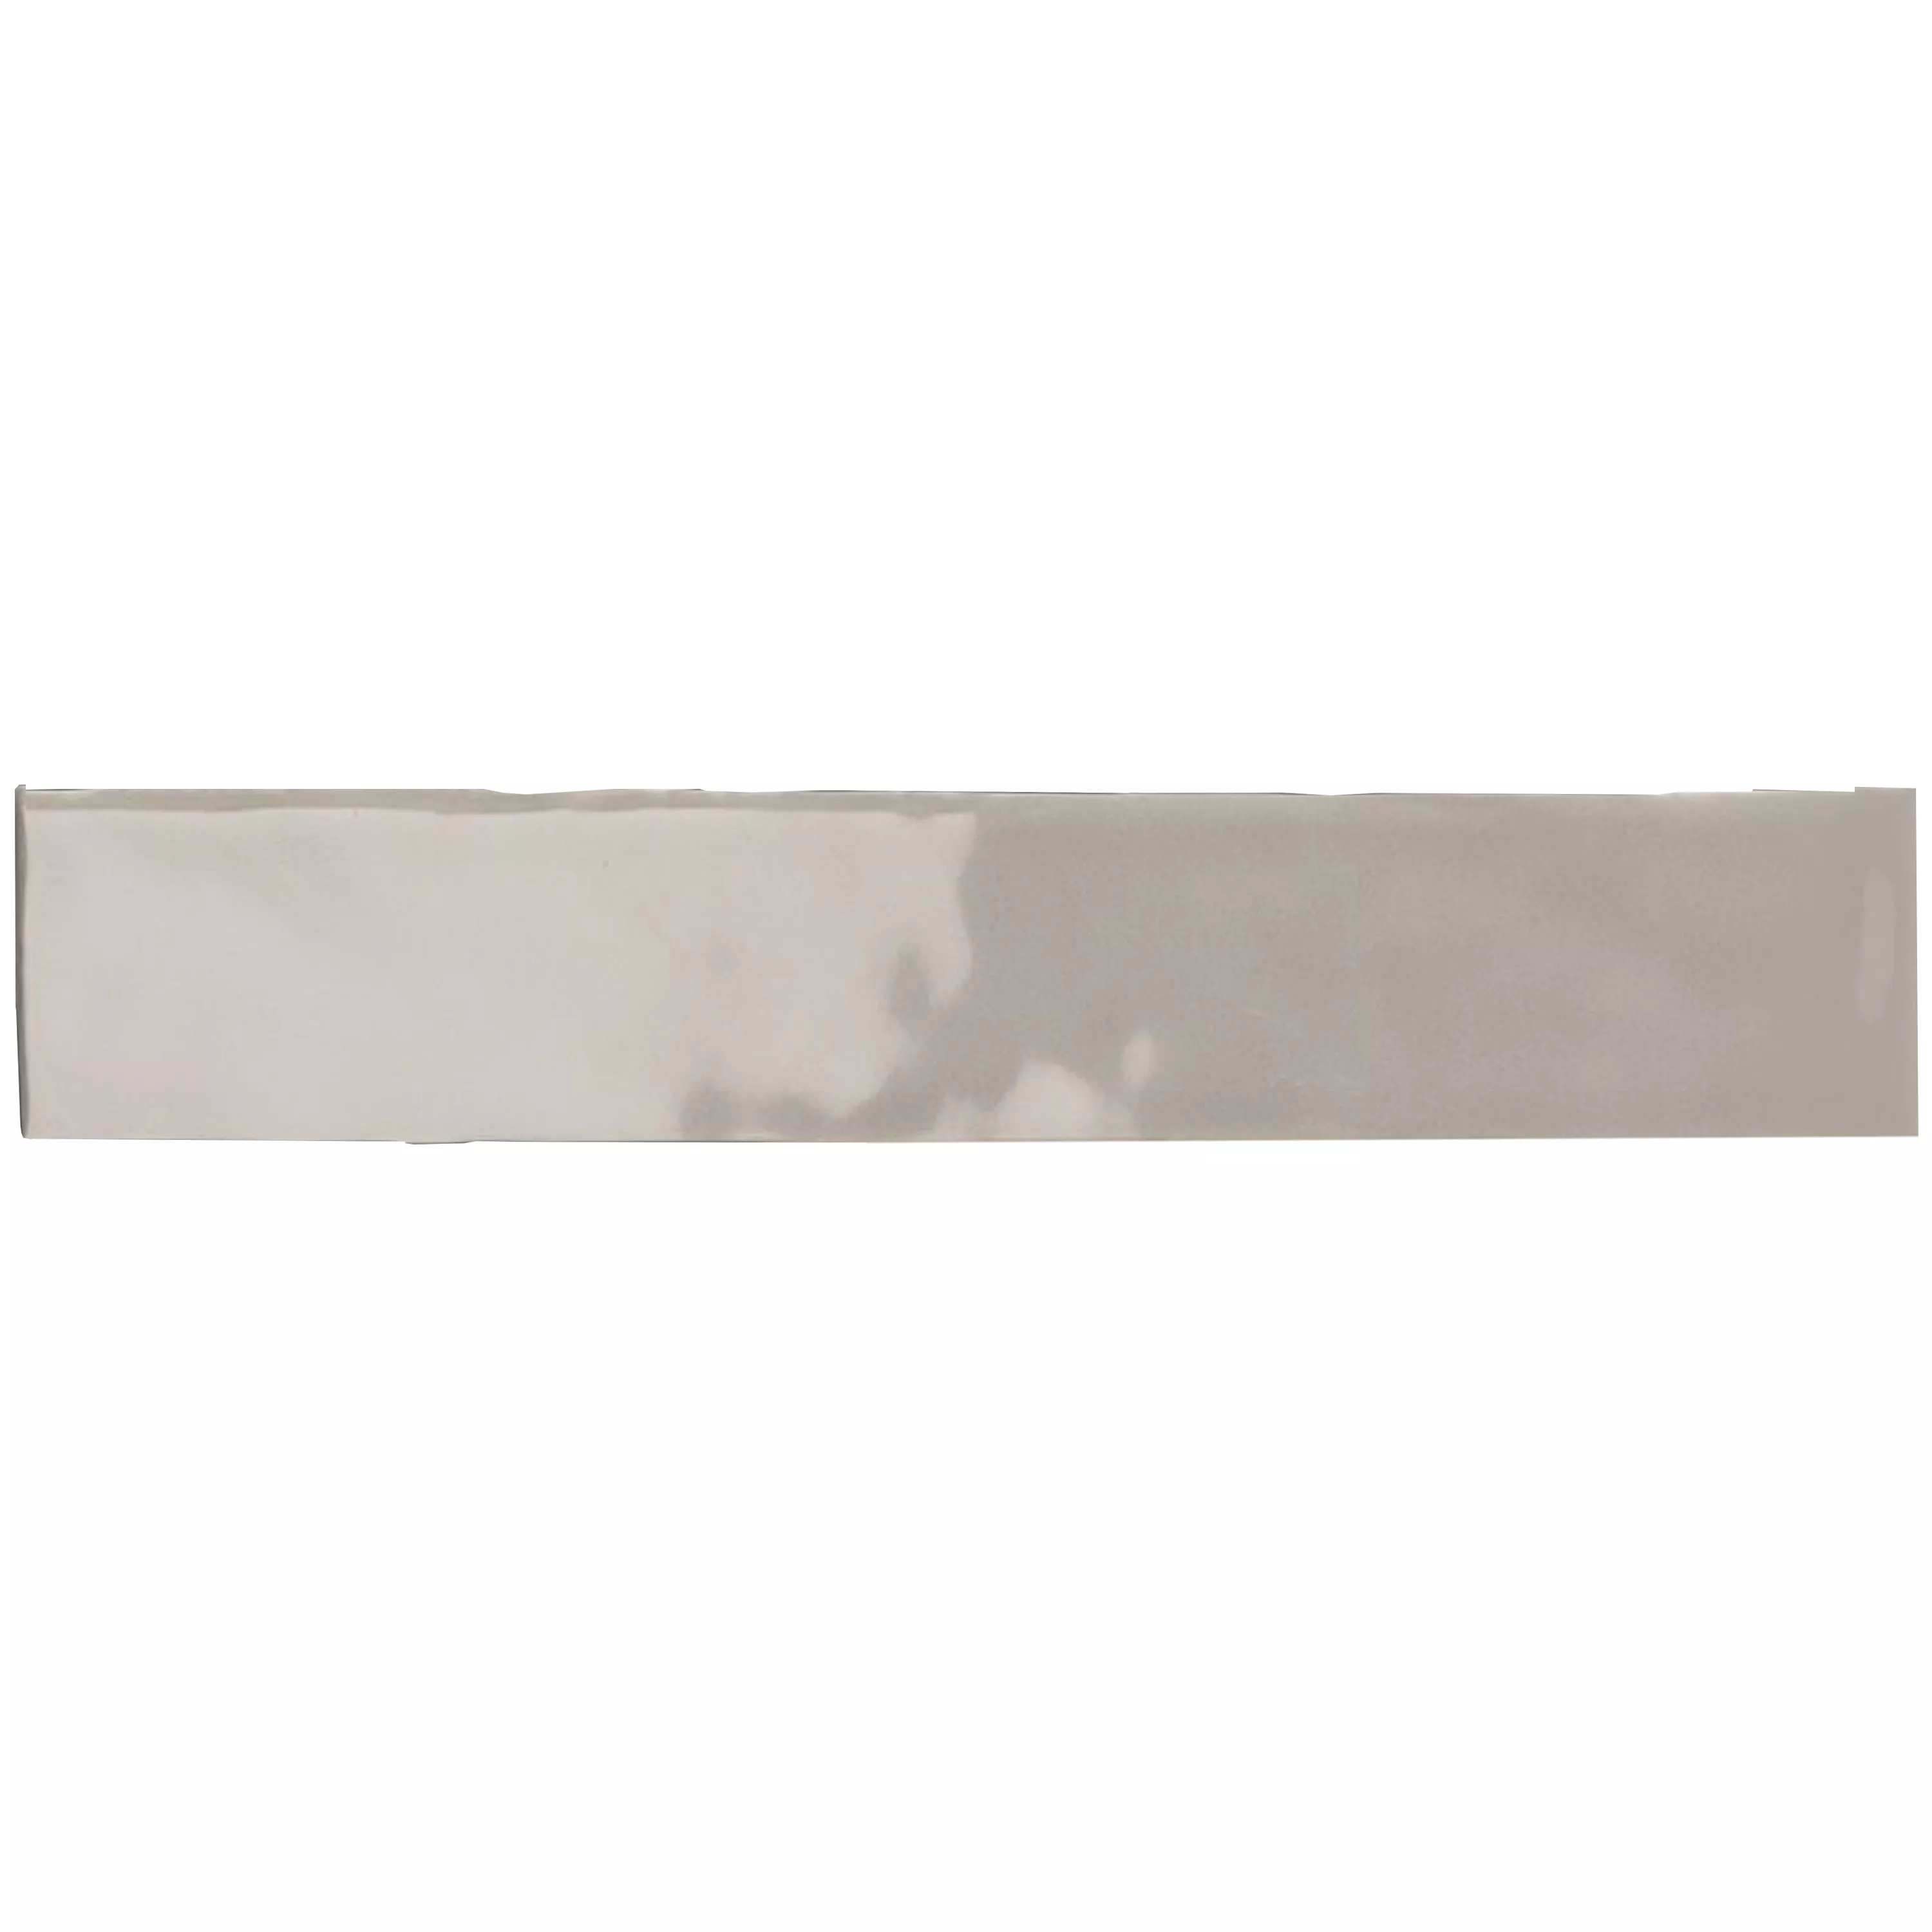 Próbka Płytki Ścienne Montreal Karbowany Jasnobrązowy 5x25cm